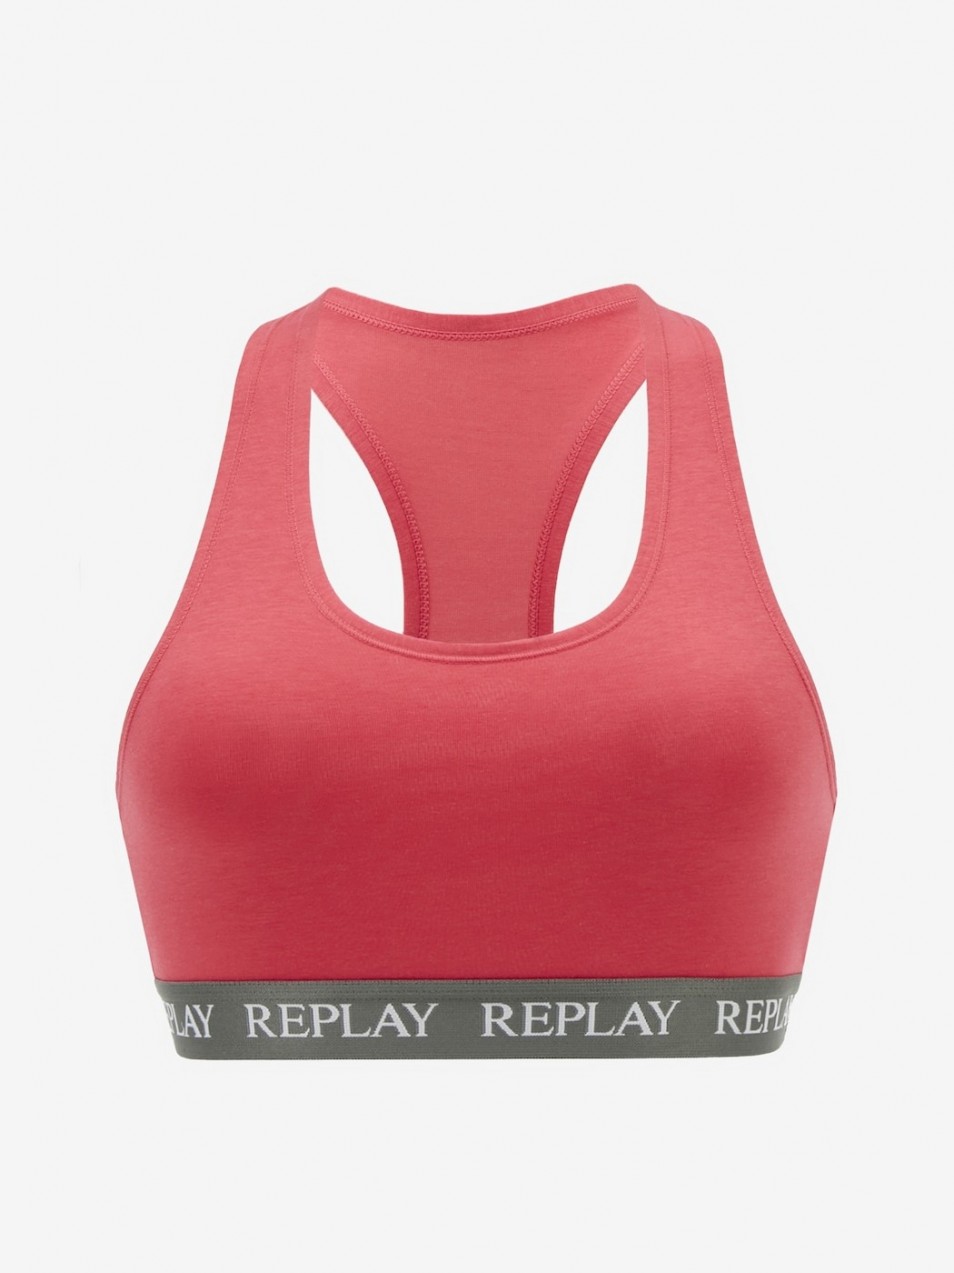 Replay Bra - Women's